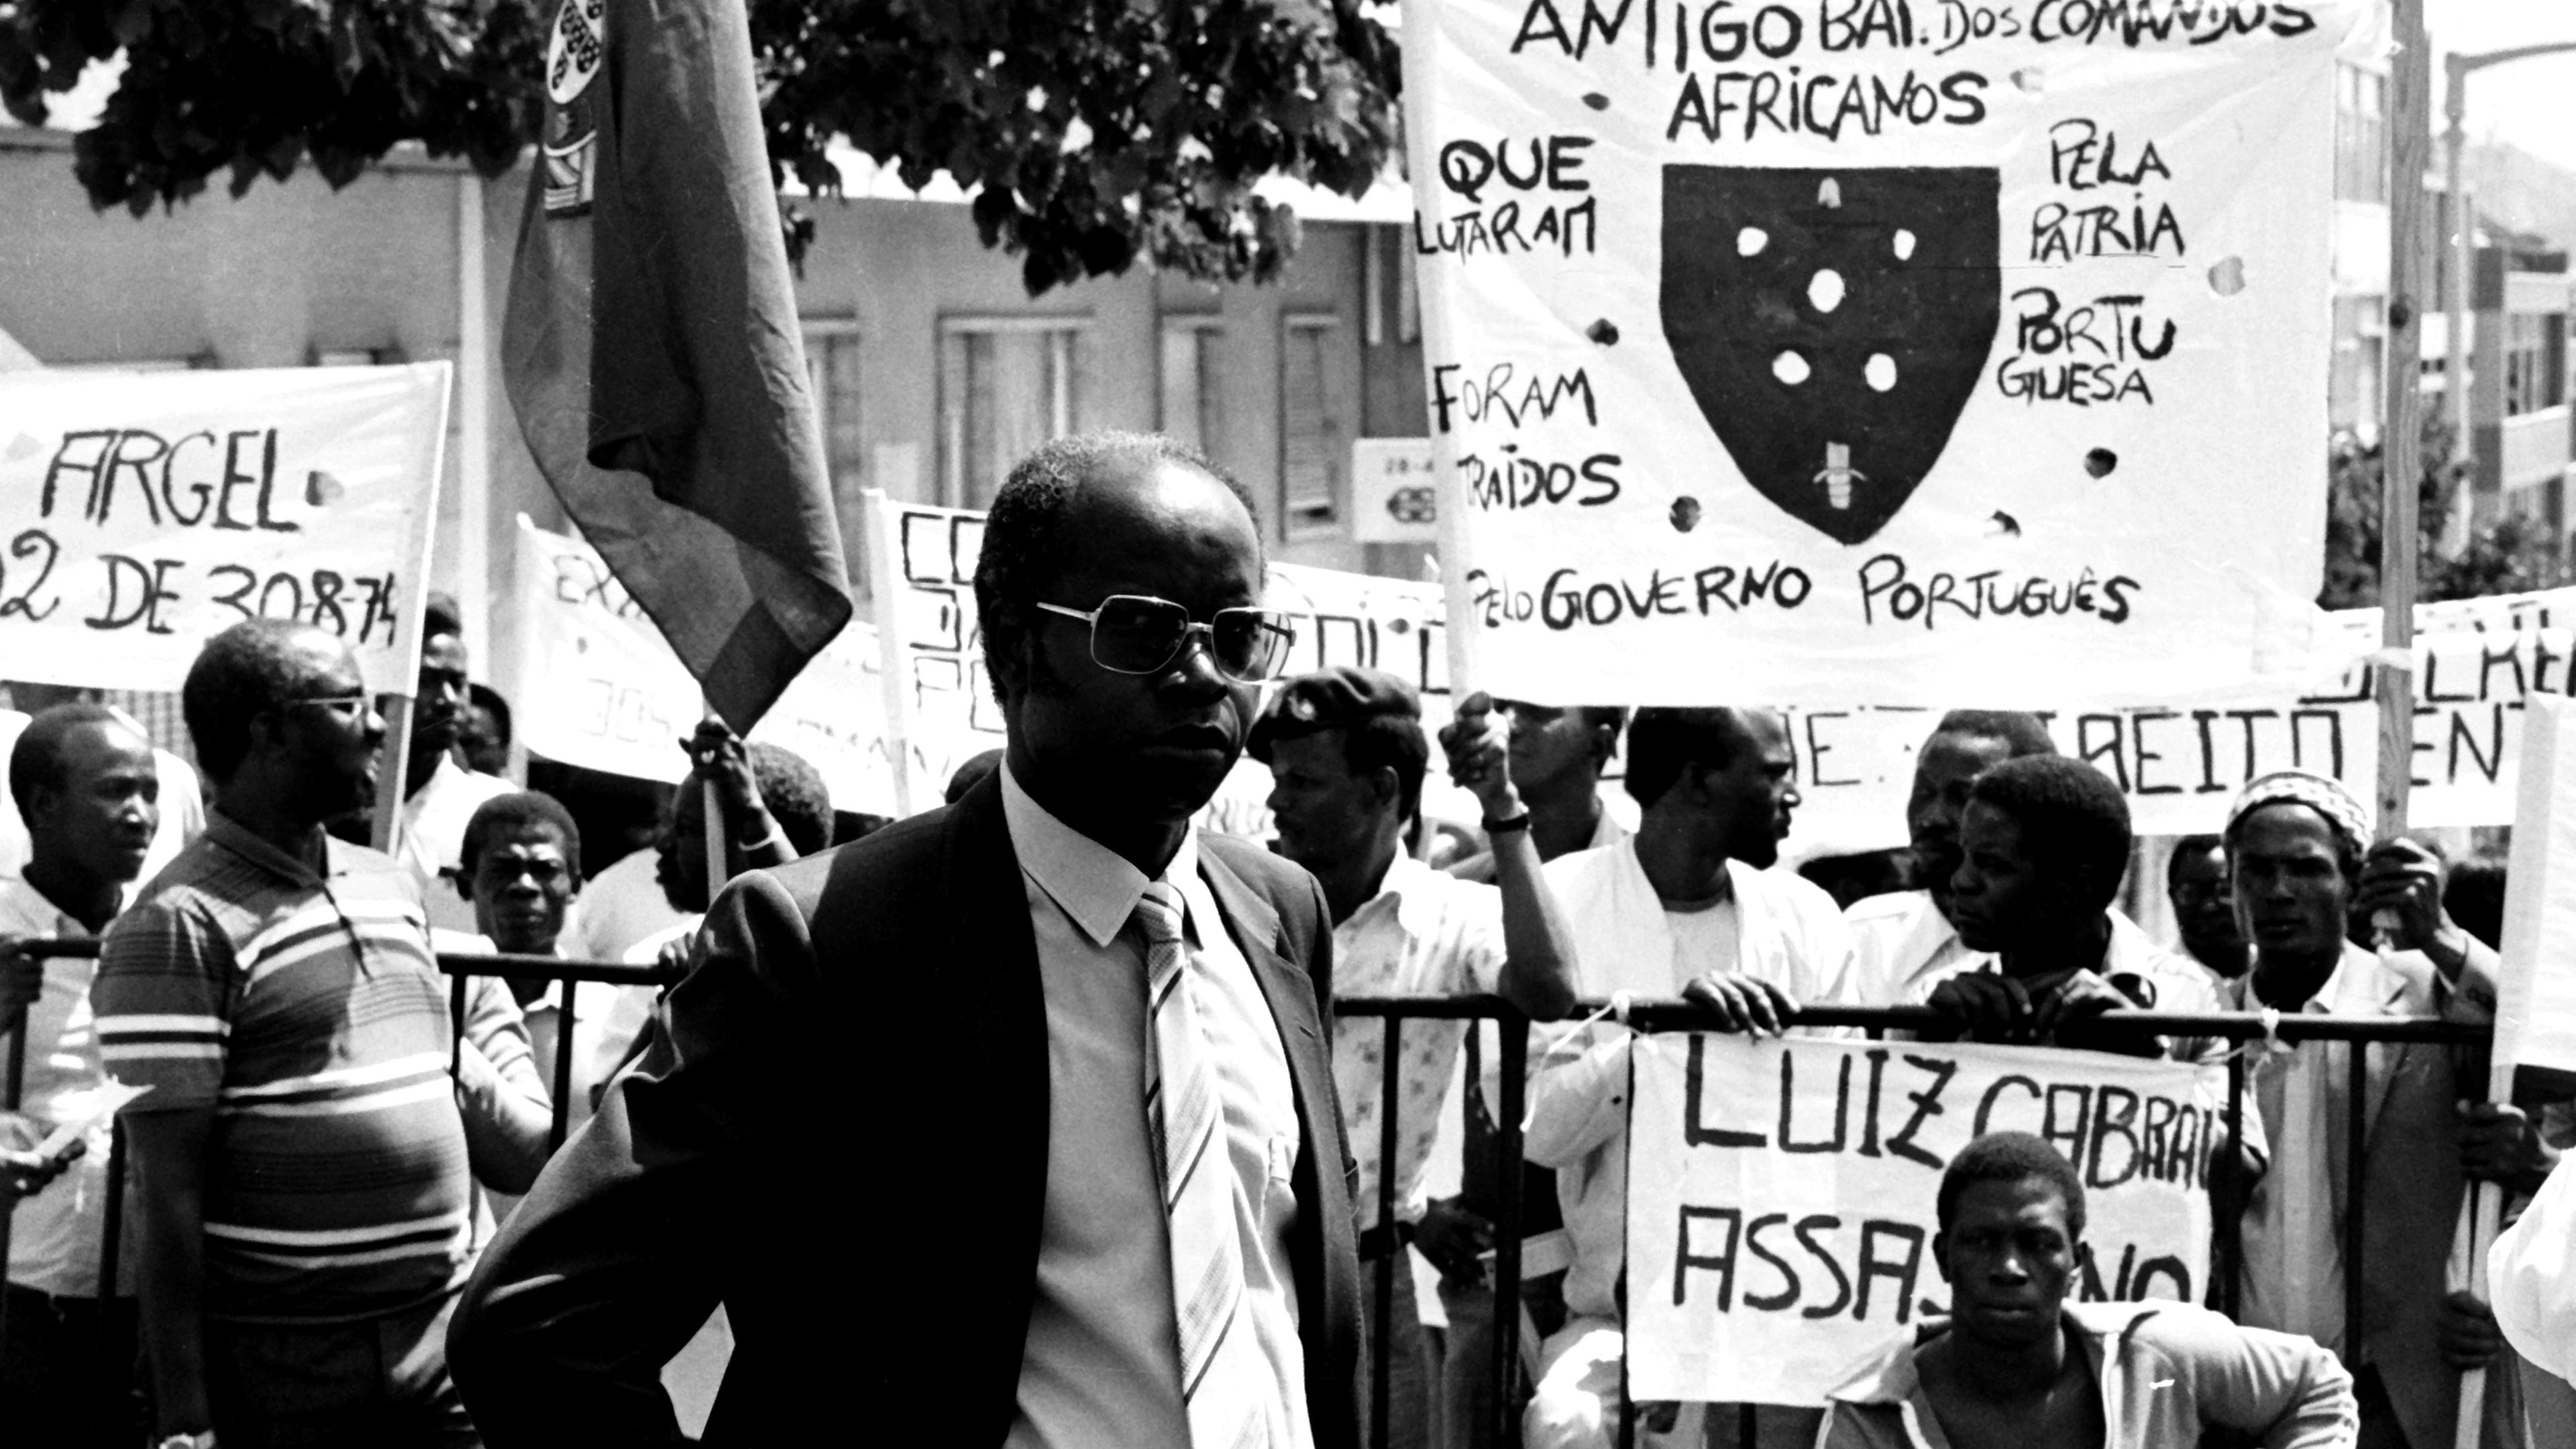 O Capitão Marcelino da Mata participa na manifestação de comandos africanos, da Guiné-Bissau, junto ao Ministério da Defesa contra o abandono por parte das autoridades portuguesas, em Lisboa a 21 de agosto de 1986.

Manuel Moura / Lusa